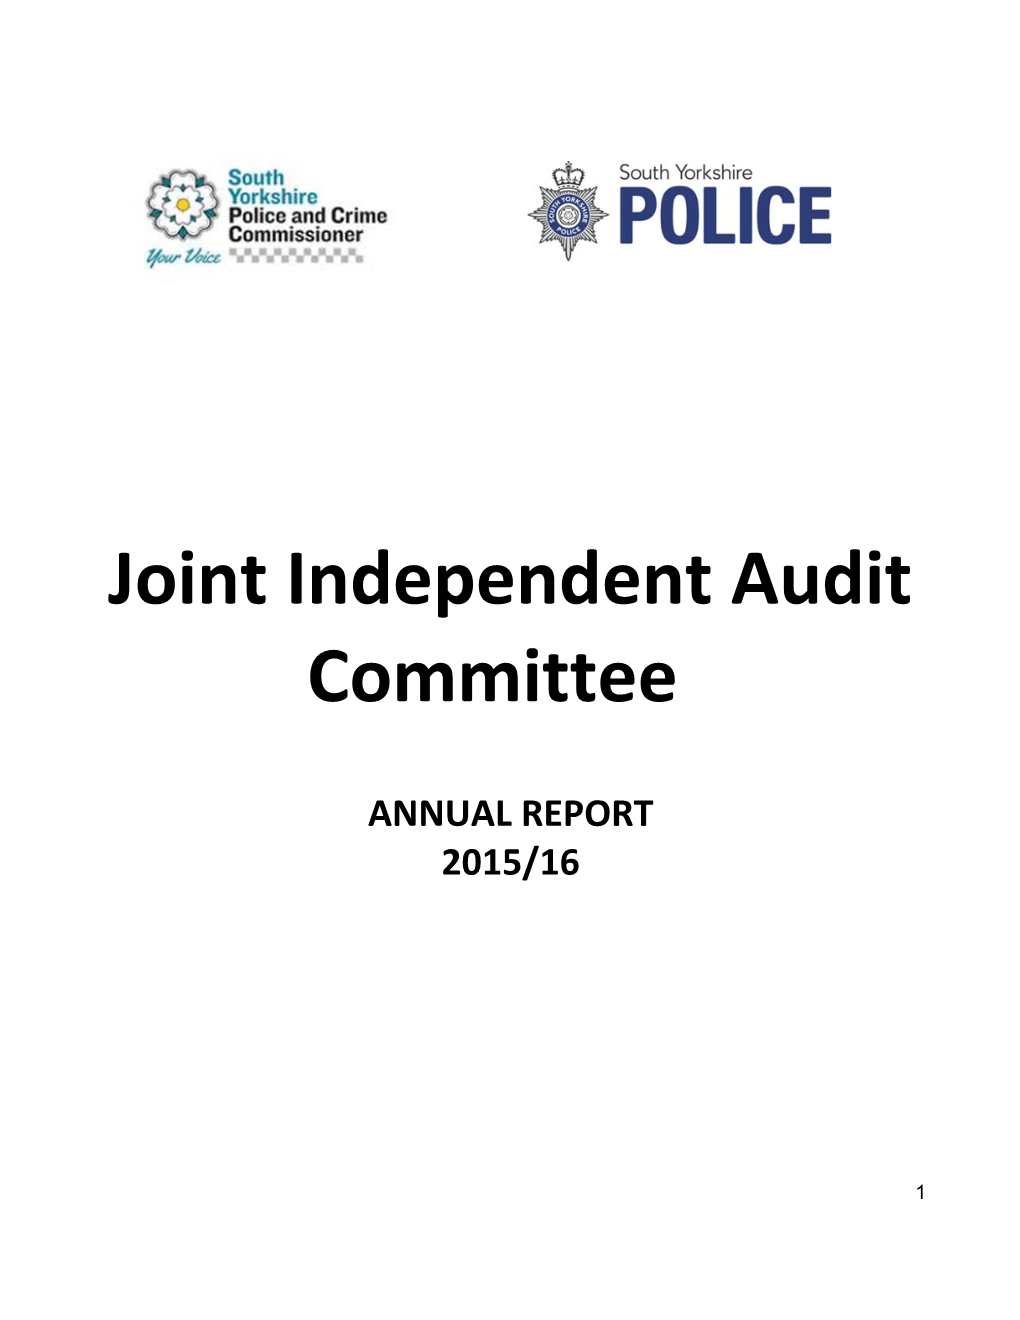 AC Annual Report 2015-16 - FINAL